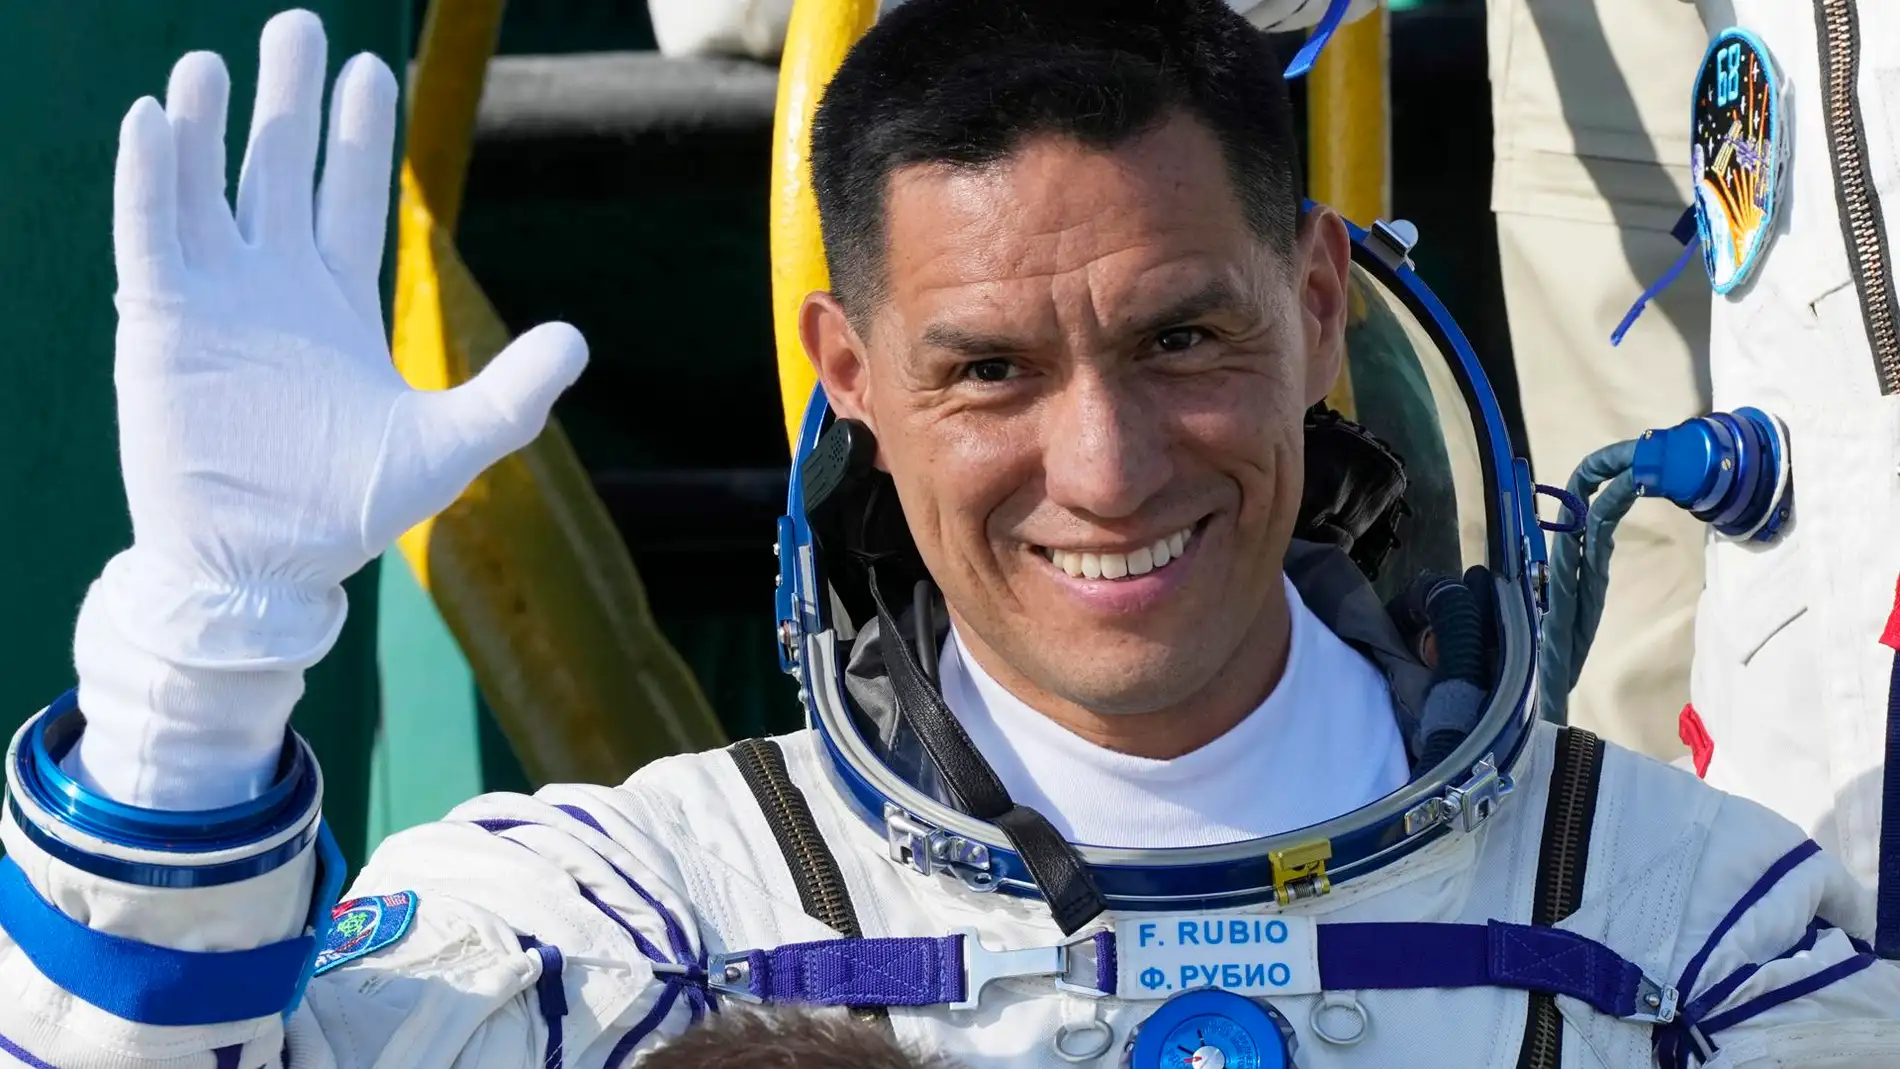 Frank Rubio se convierte en el astronauta que más tiempo ha pasado en el espacio